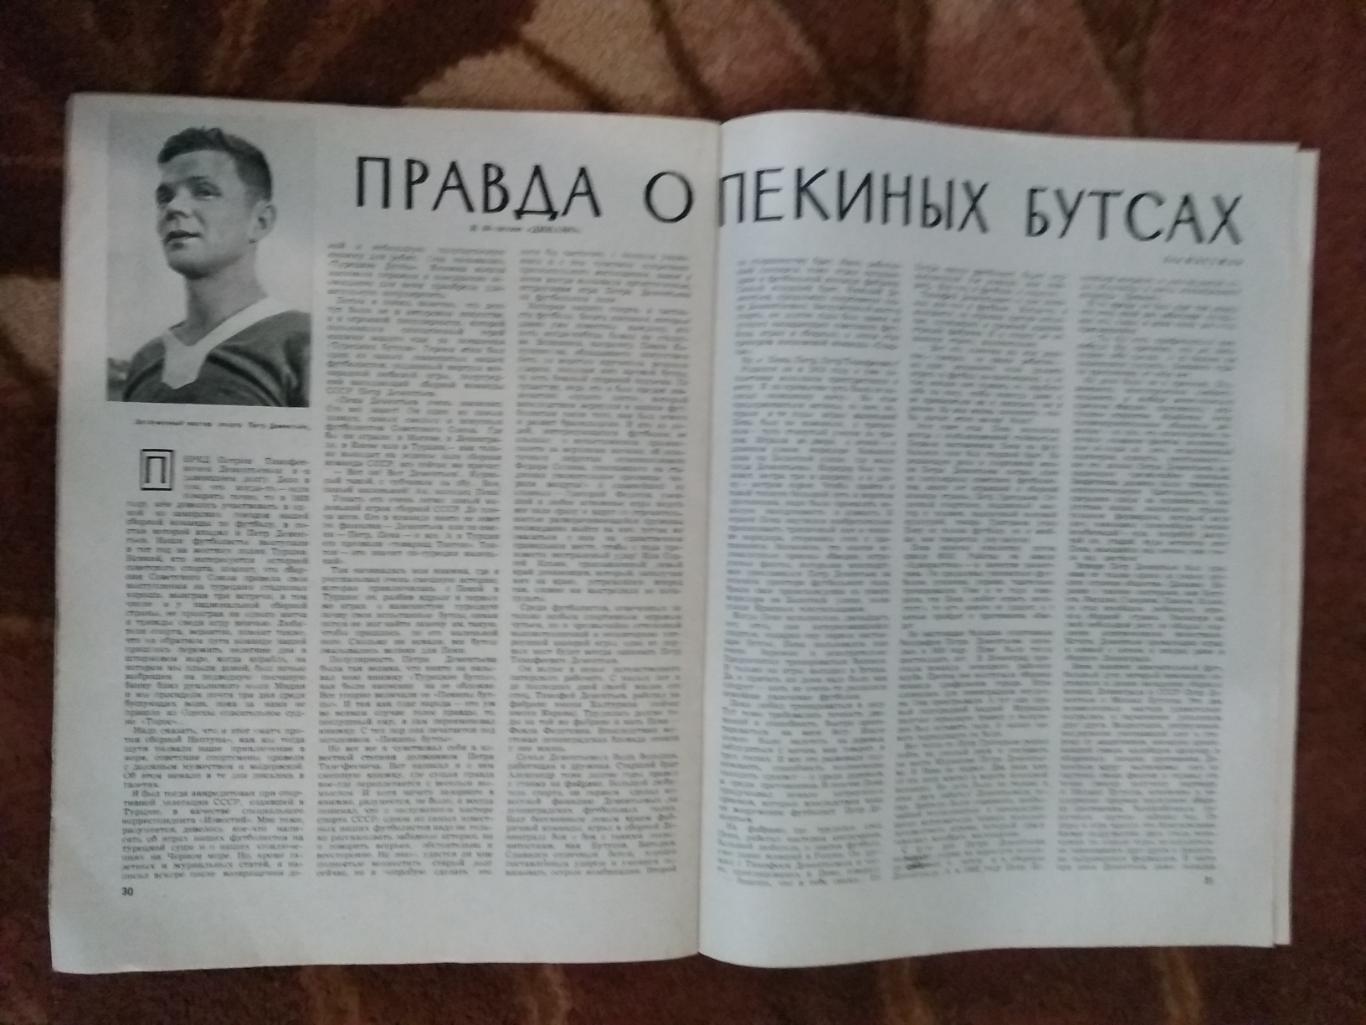 Журнал.Физкультура и спорт№ 3 1963 г. (40 лет ДСО Динамо).(ФиС). 3